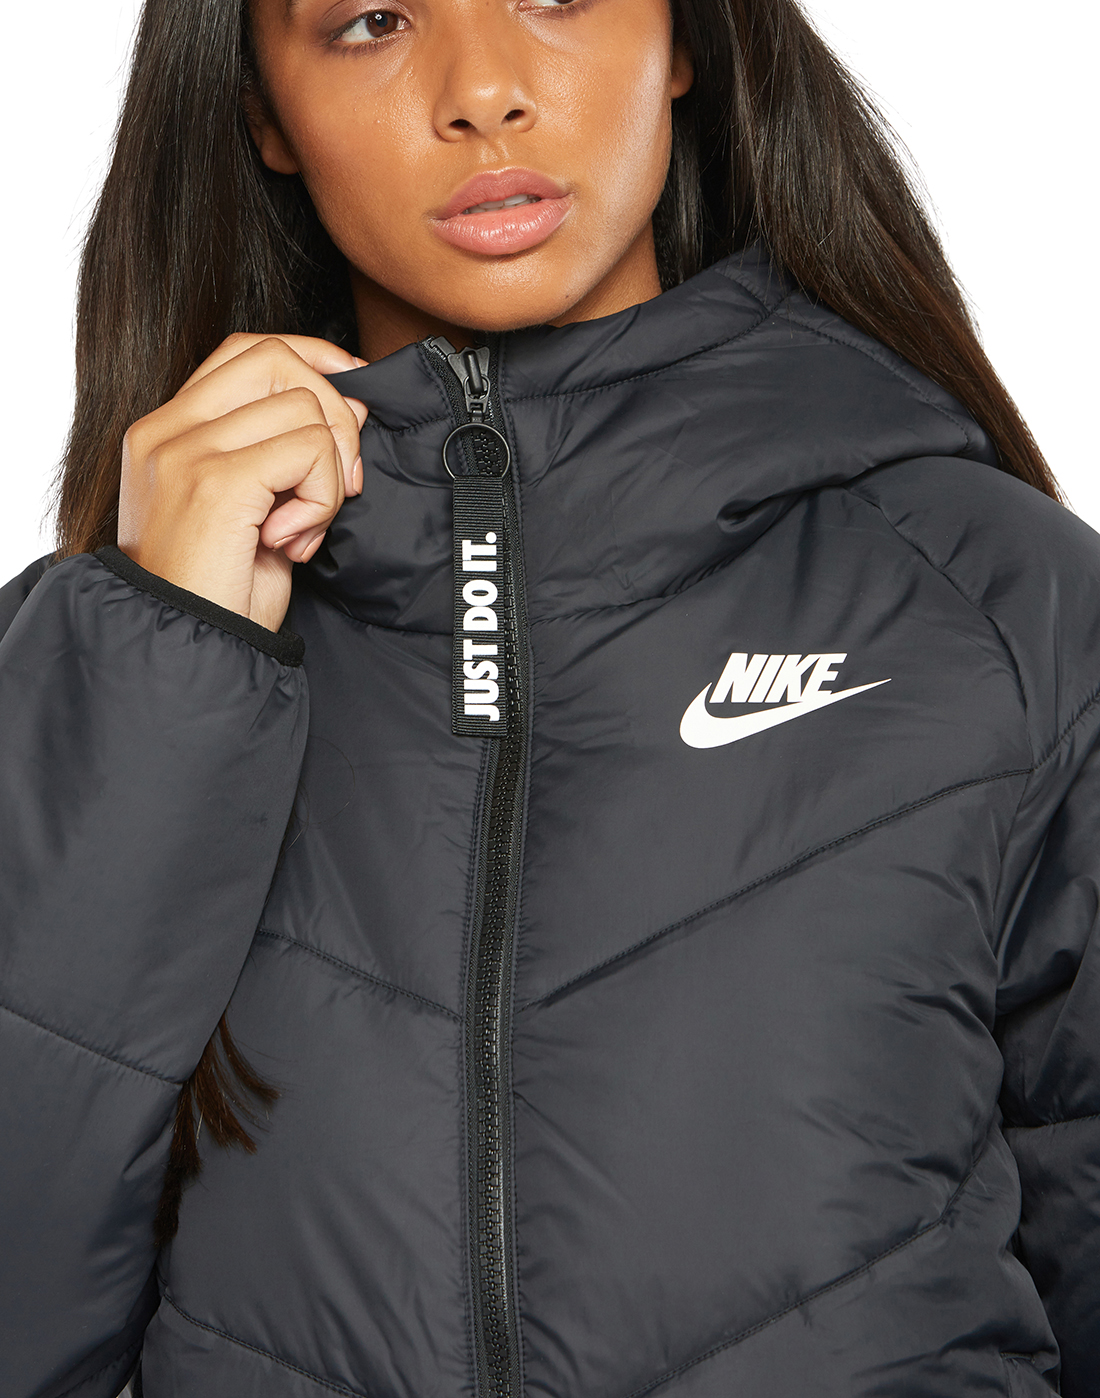 Nike Womens Padded Jacket - Black 